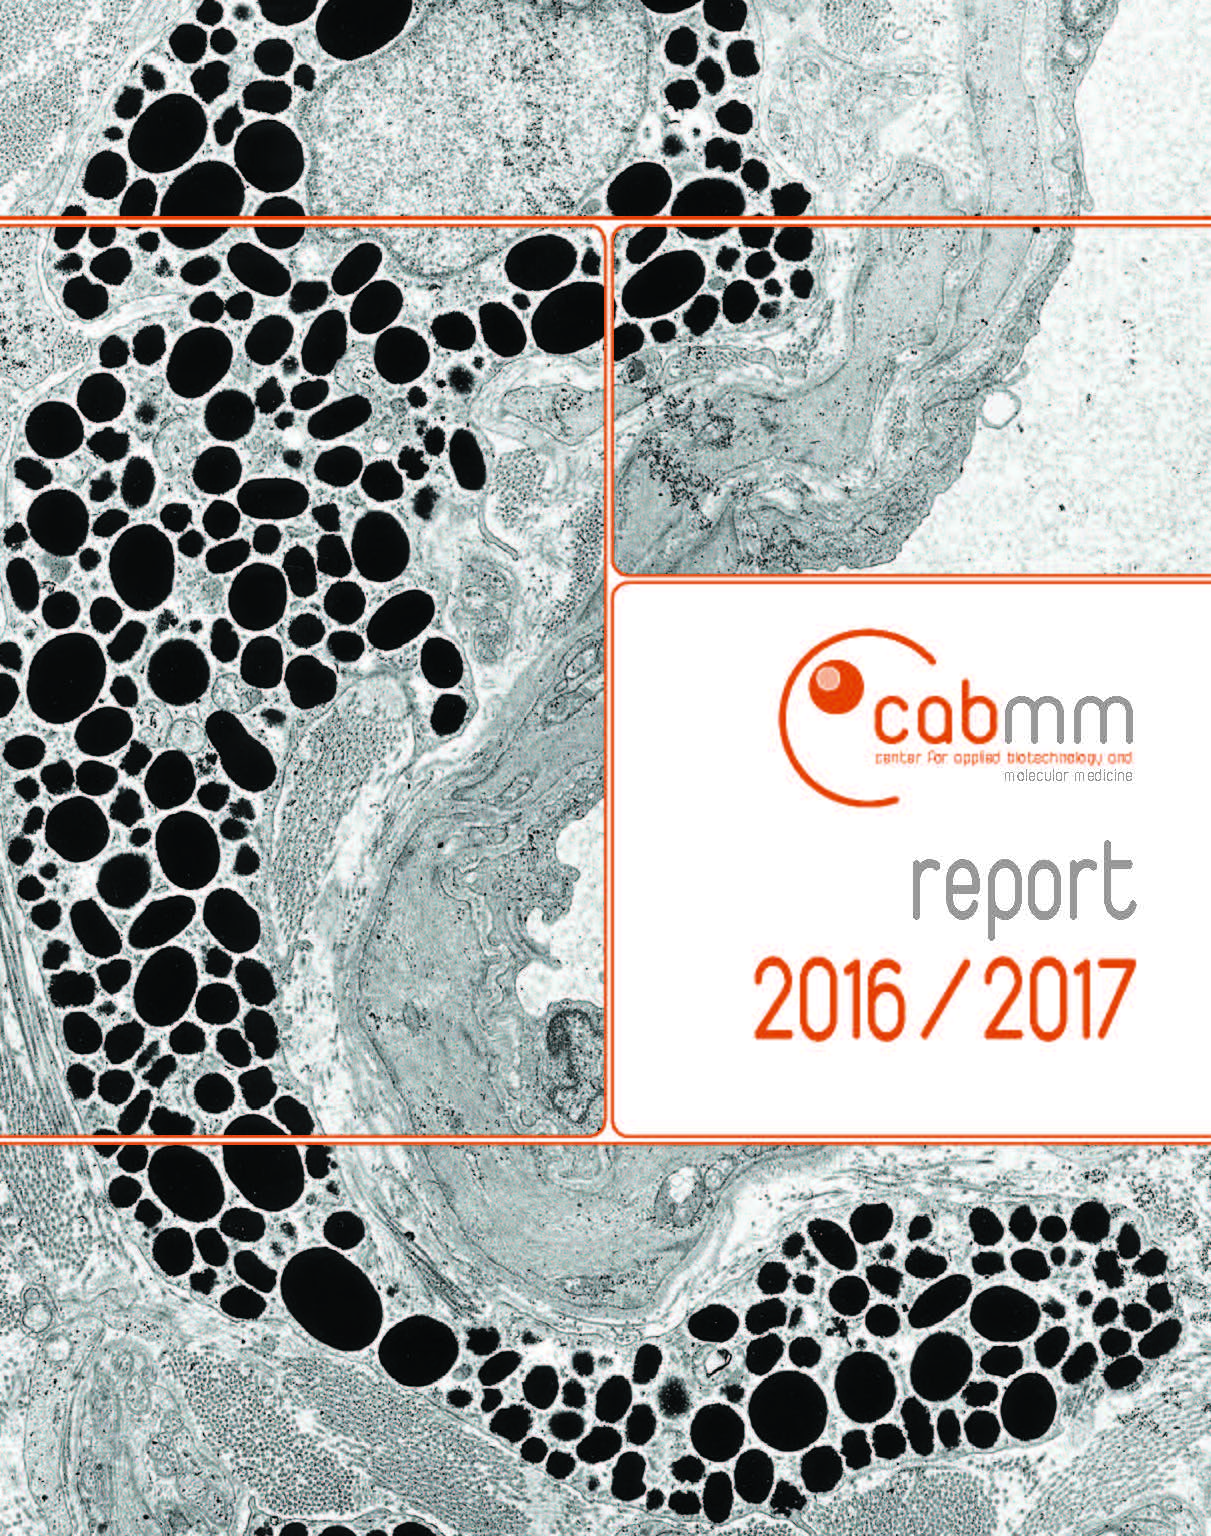 CABMM Report 2016/2017